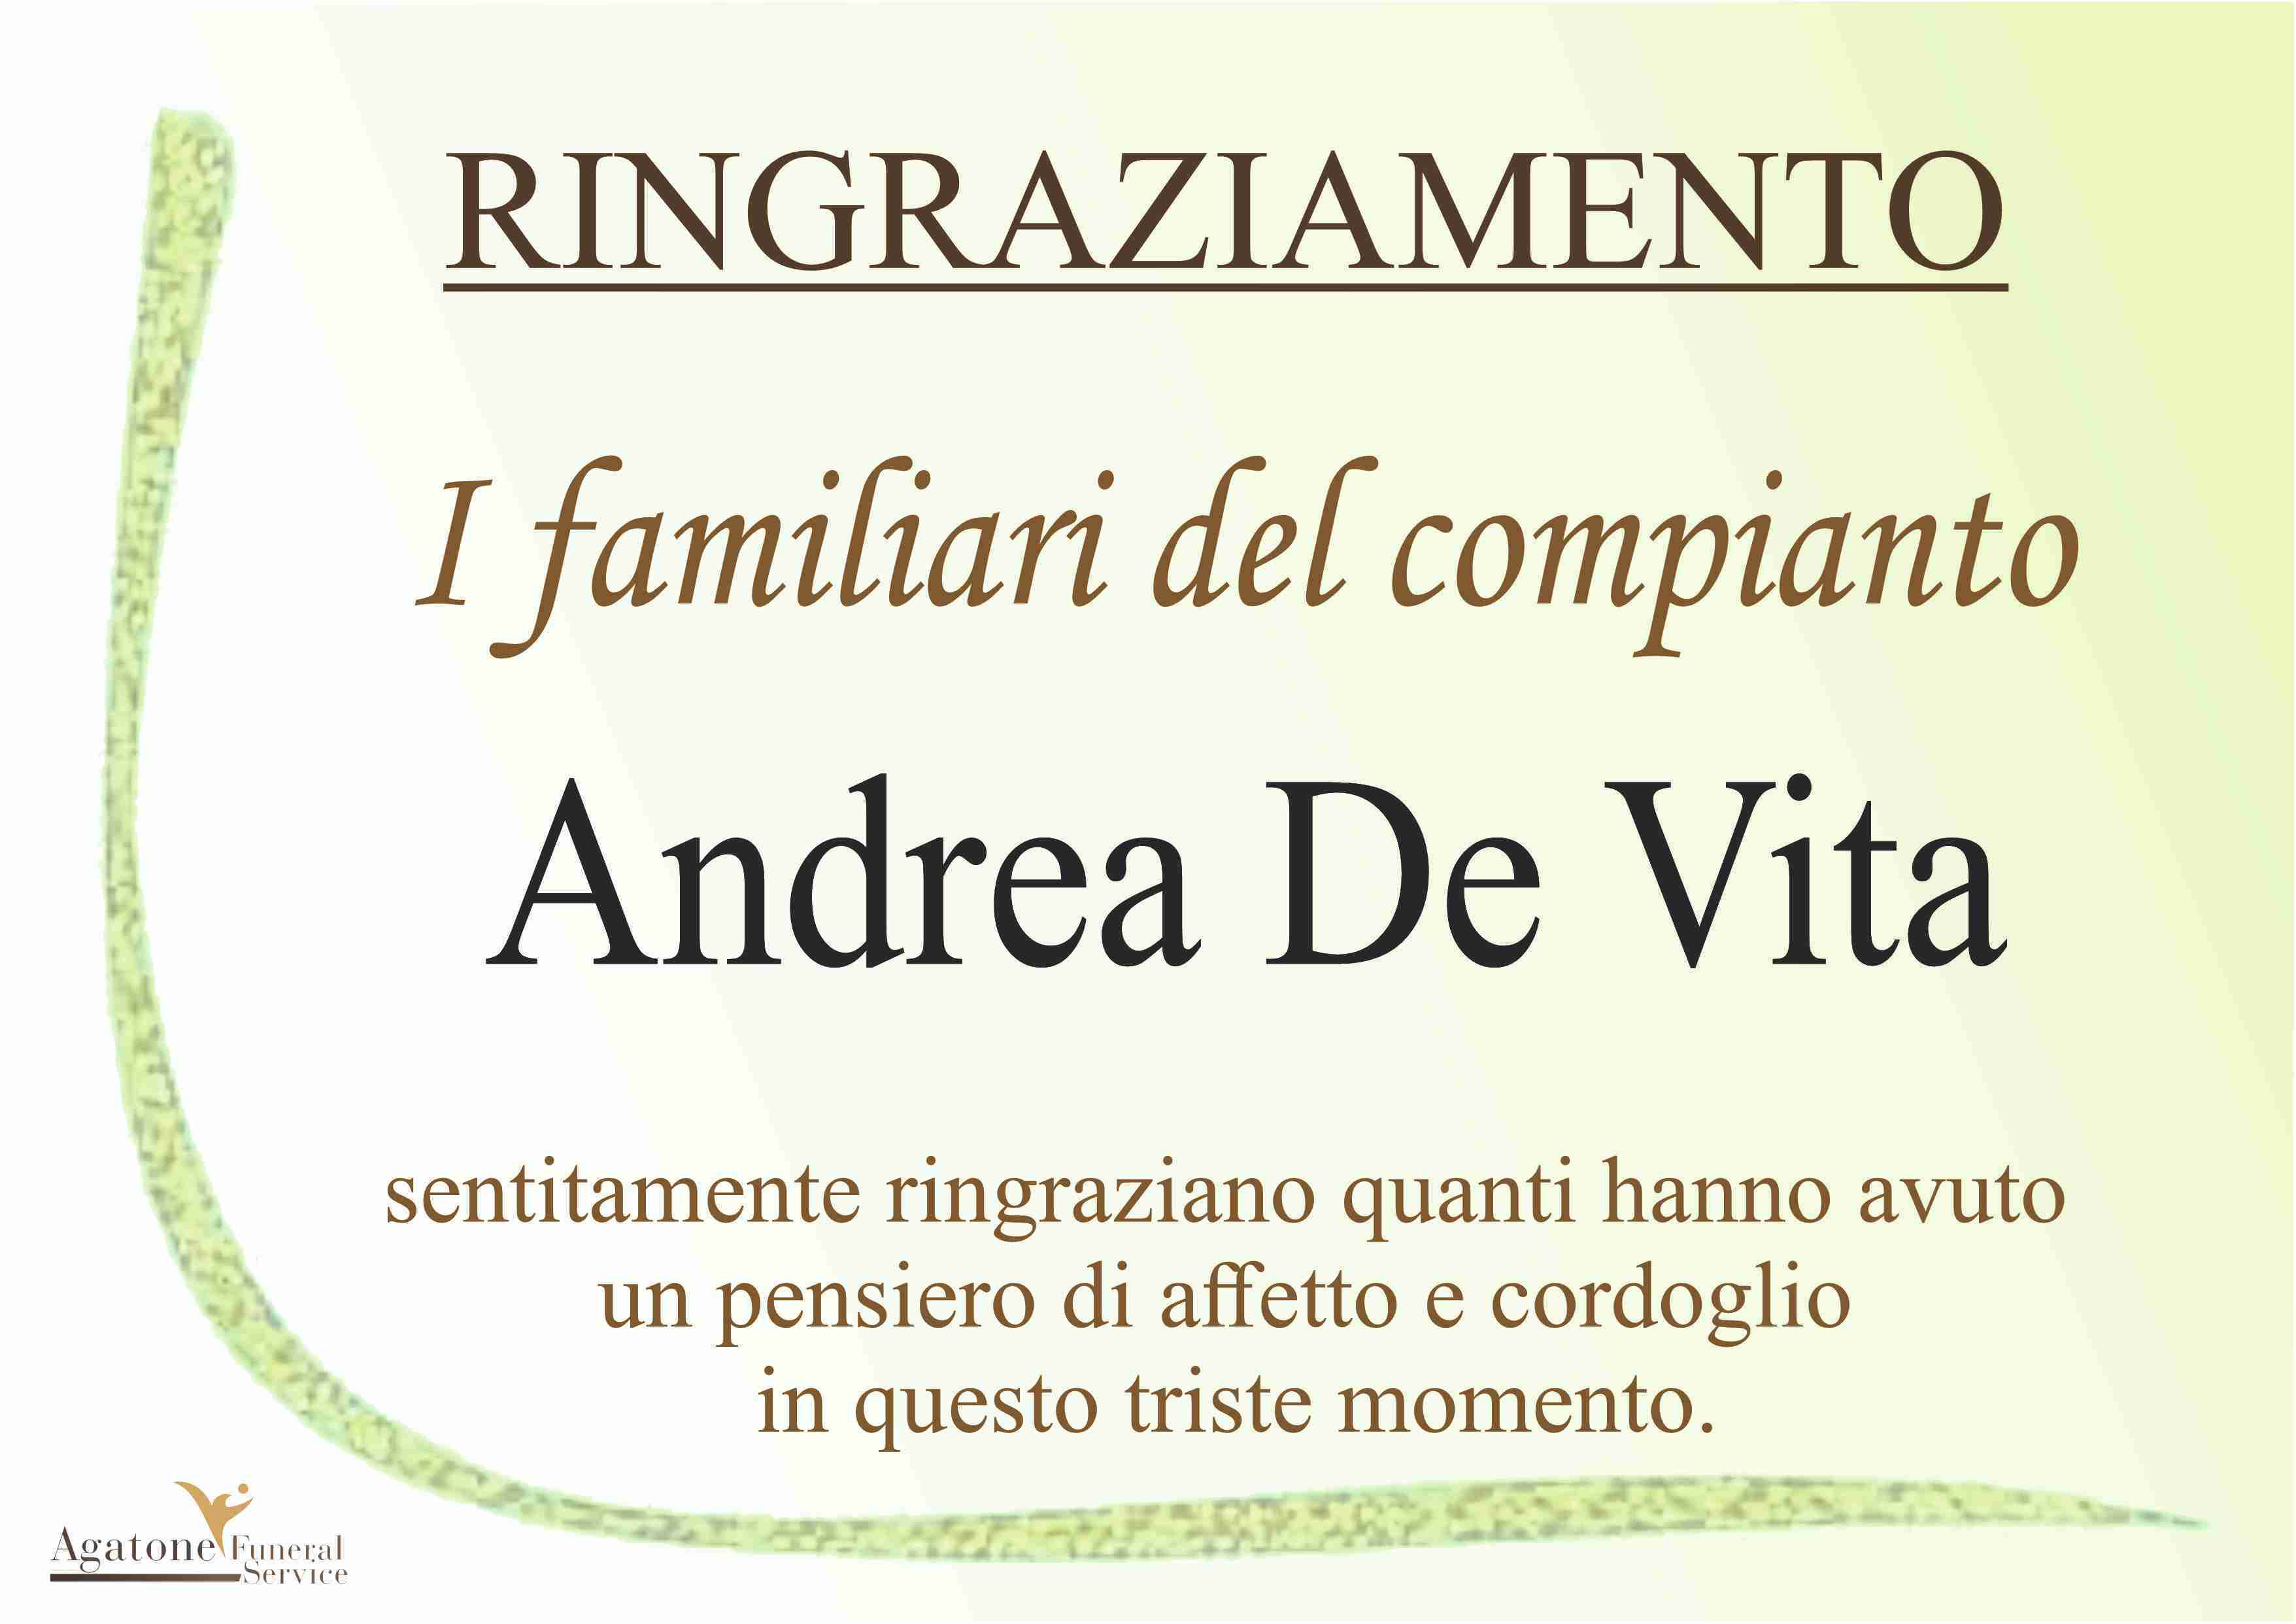 Andrea De Vita